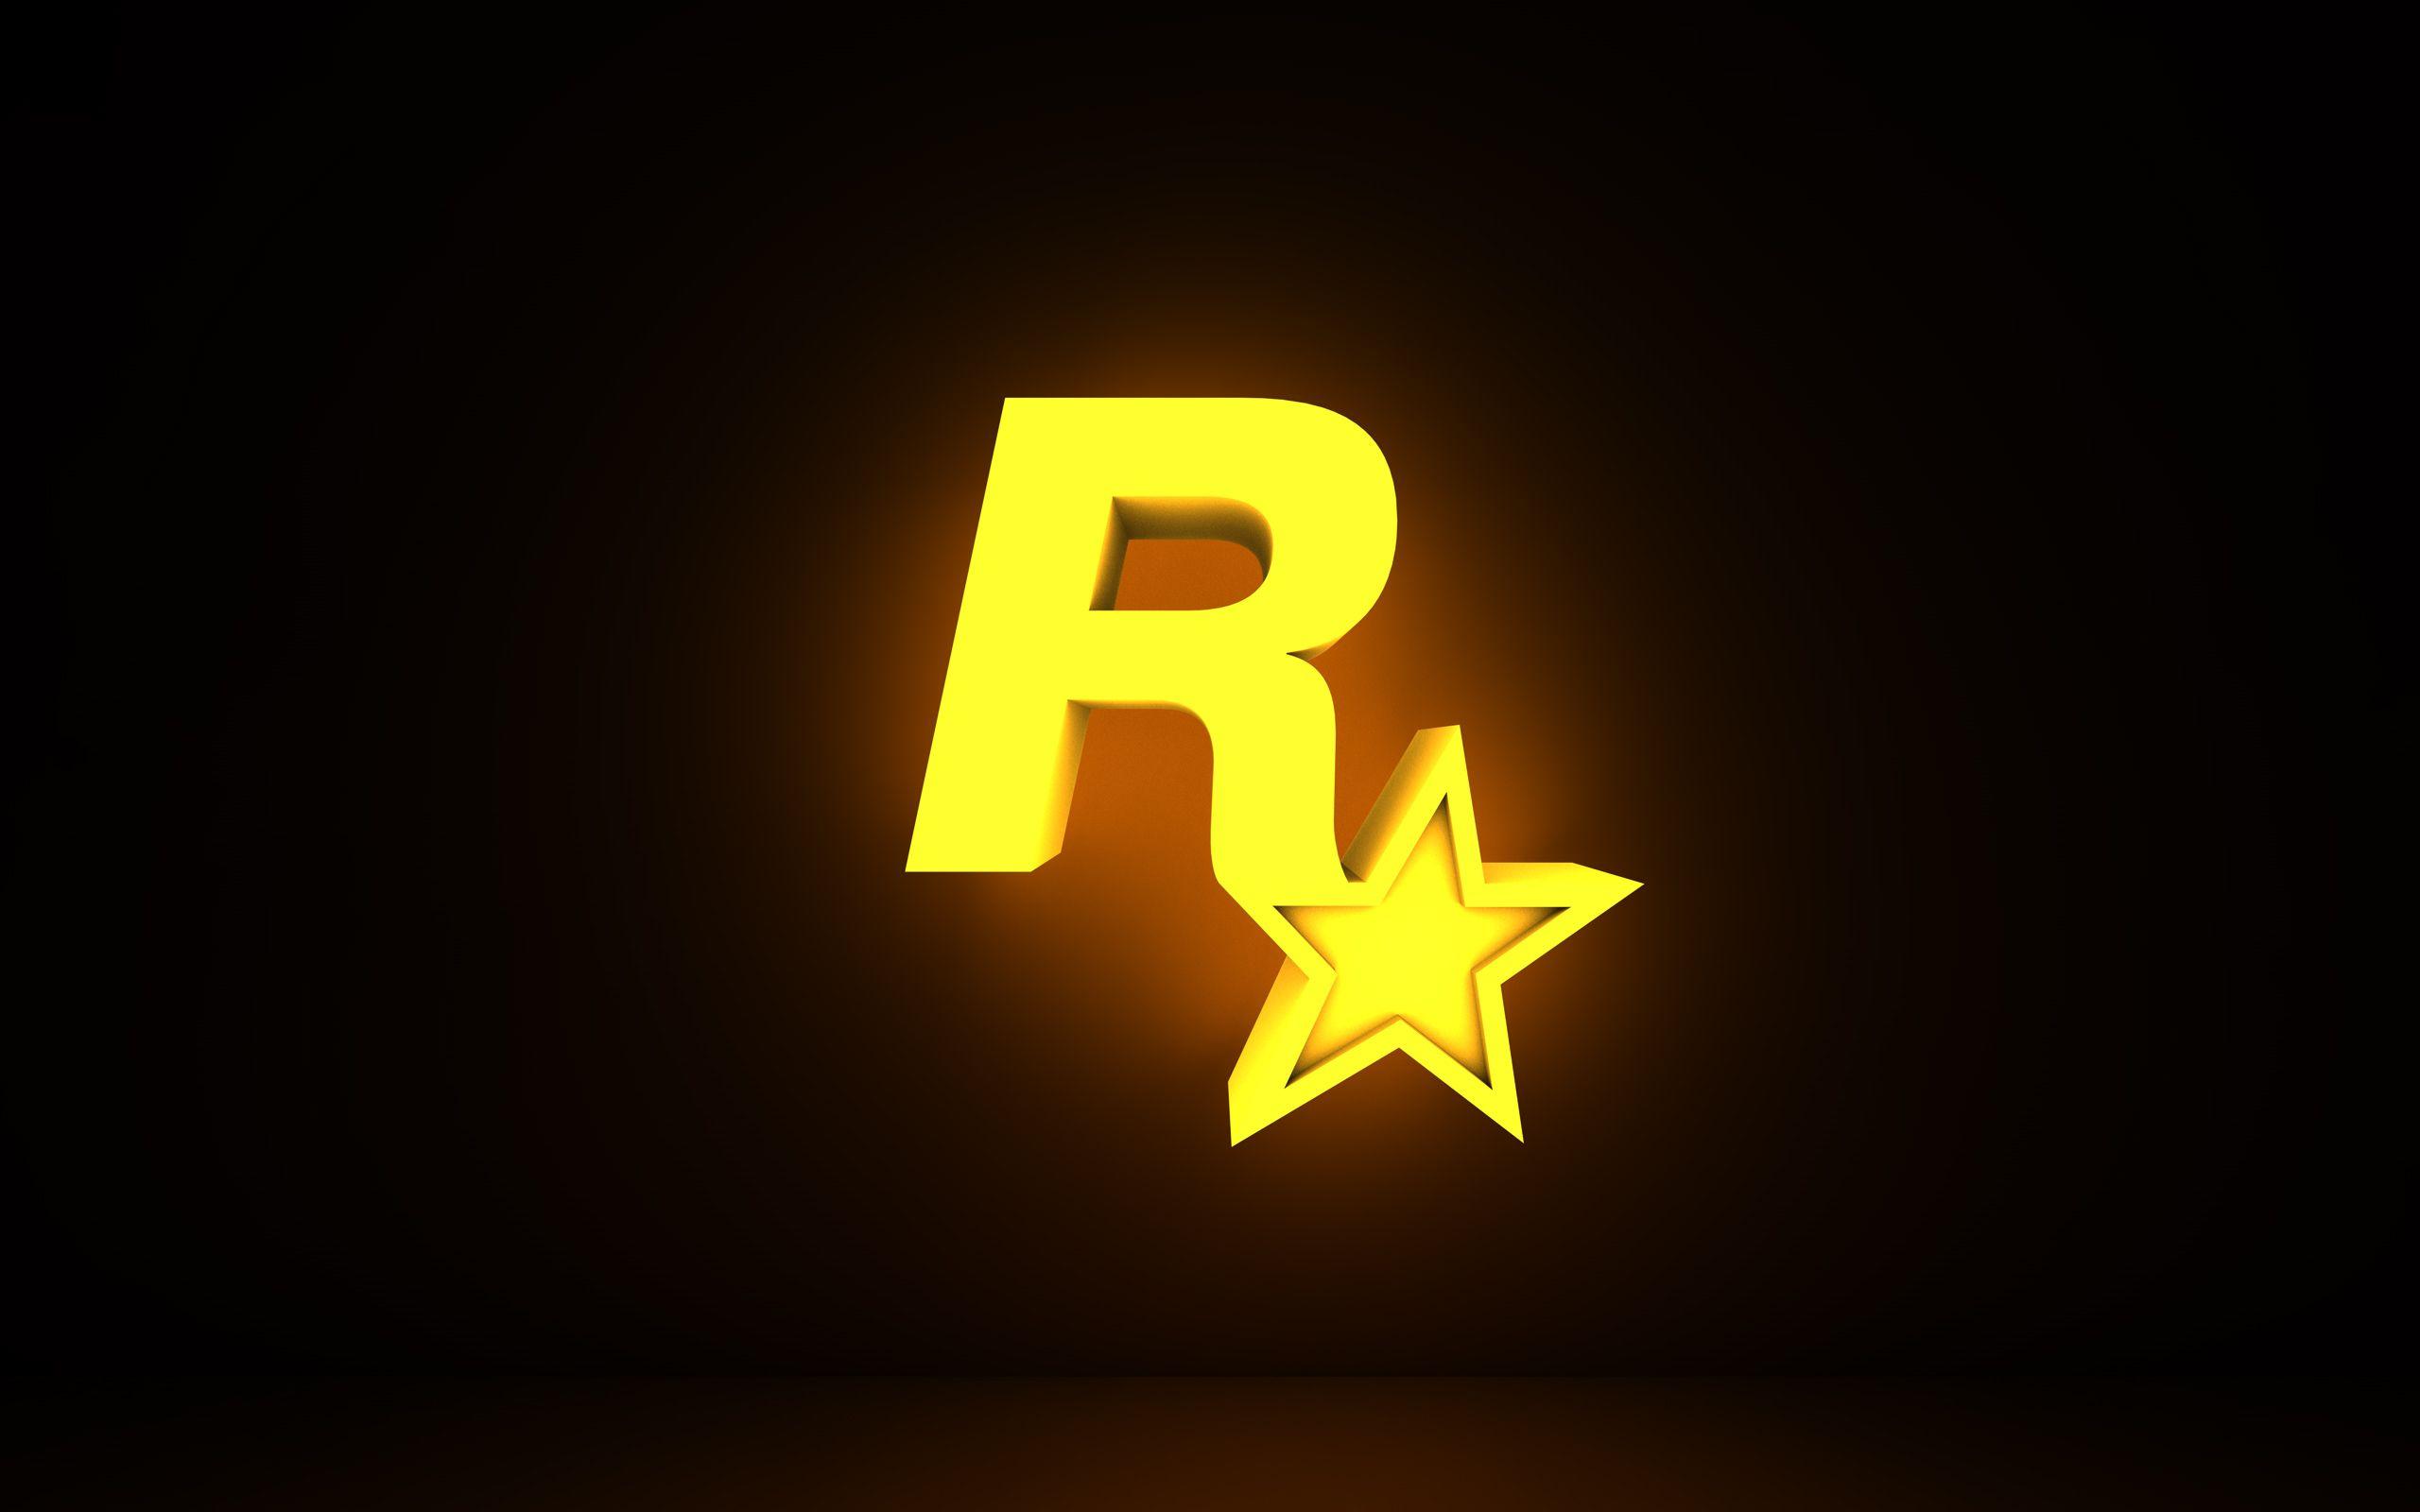 Raspaw: R With A Star Logo Name